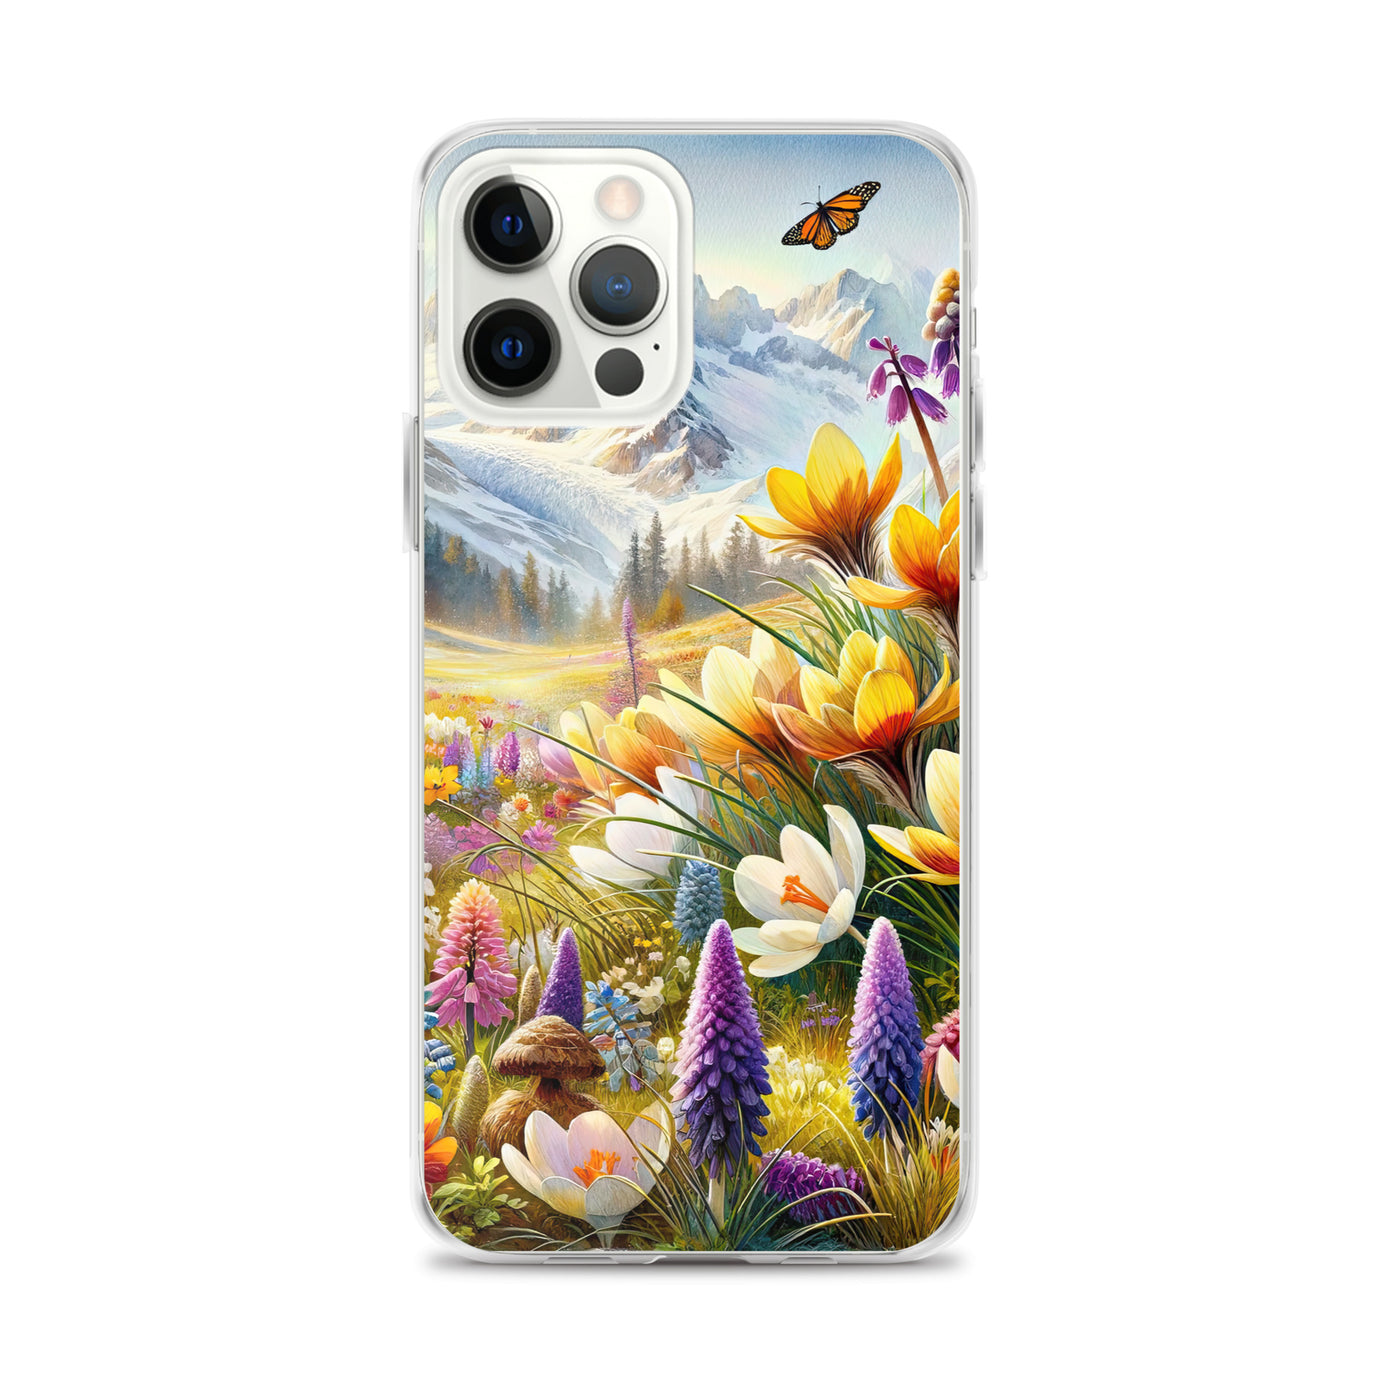 Aquarell einer ruhigen Almwiese, farbenfrohe Bergblumen in den Alpen - iPhone Schutzhülle (durchsichtig) berge xxx yyy zzz iPhone 12 Pro Max